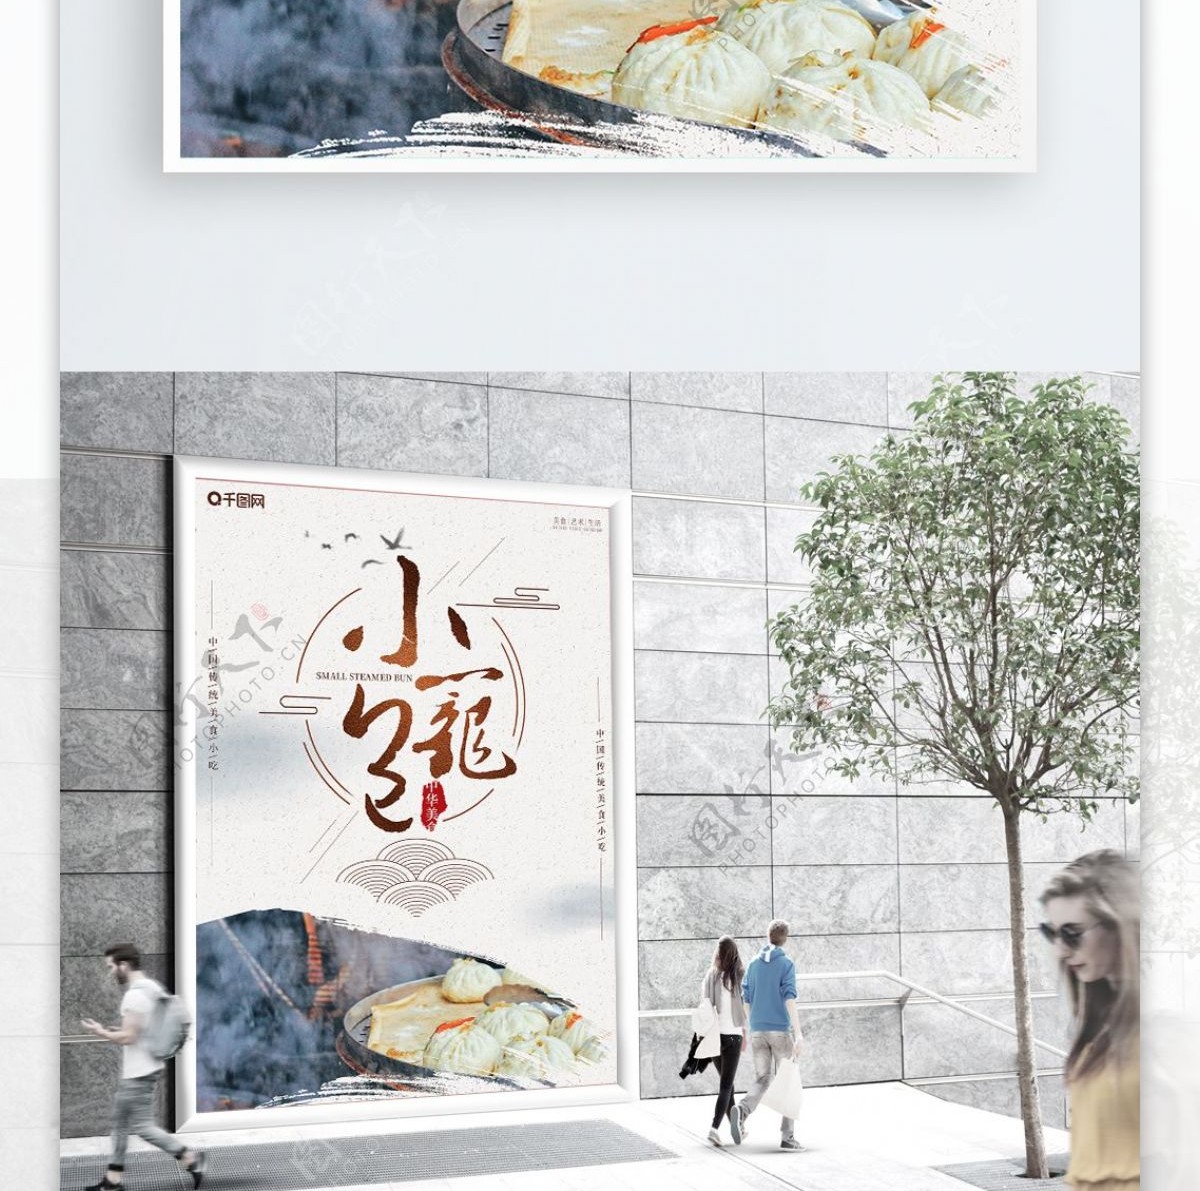 中国风小笼包美食宣传海报